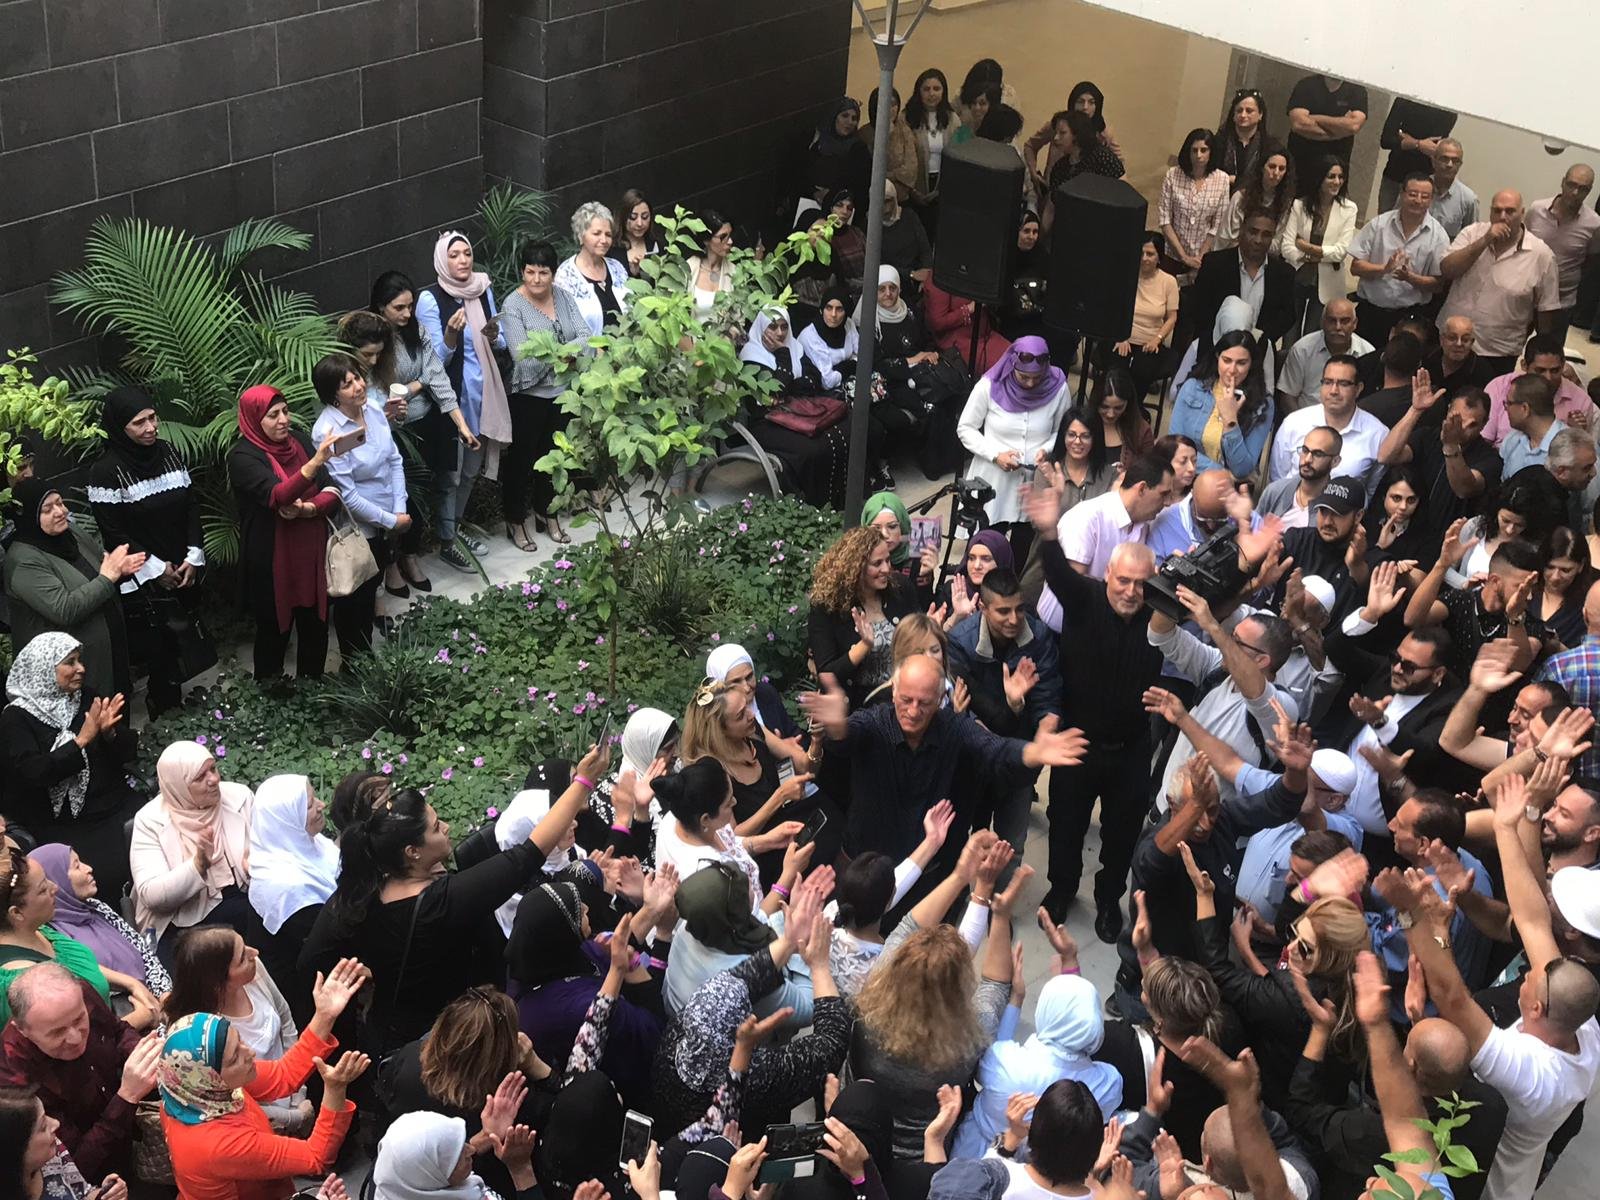 استقبال رئيس بلدية الناصرة سلام ،بالرقص والغناء اثناء دخوله الى مبنى البلدية-6